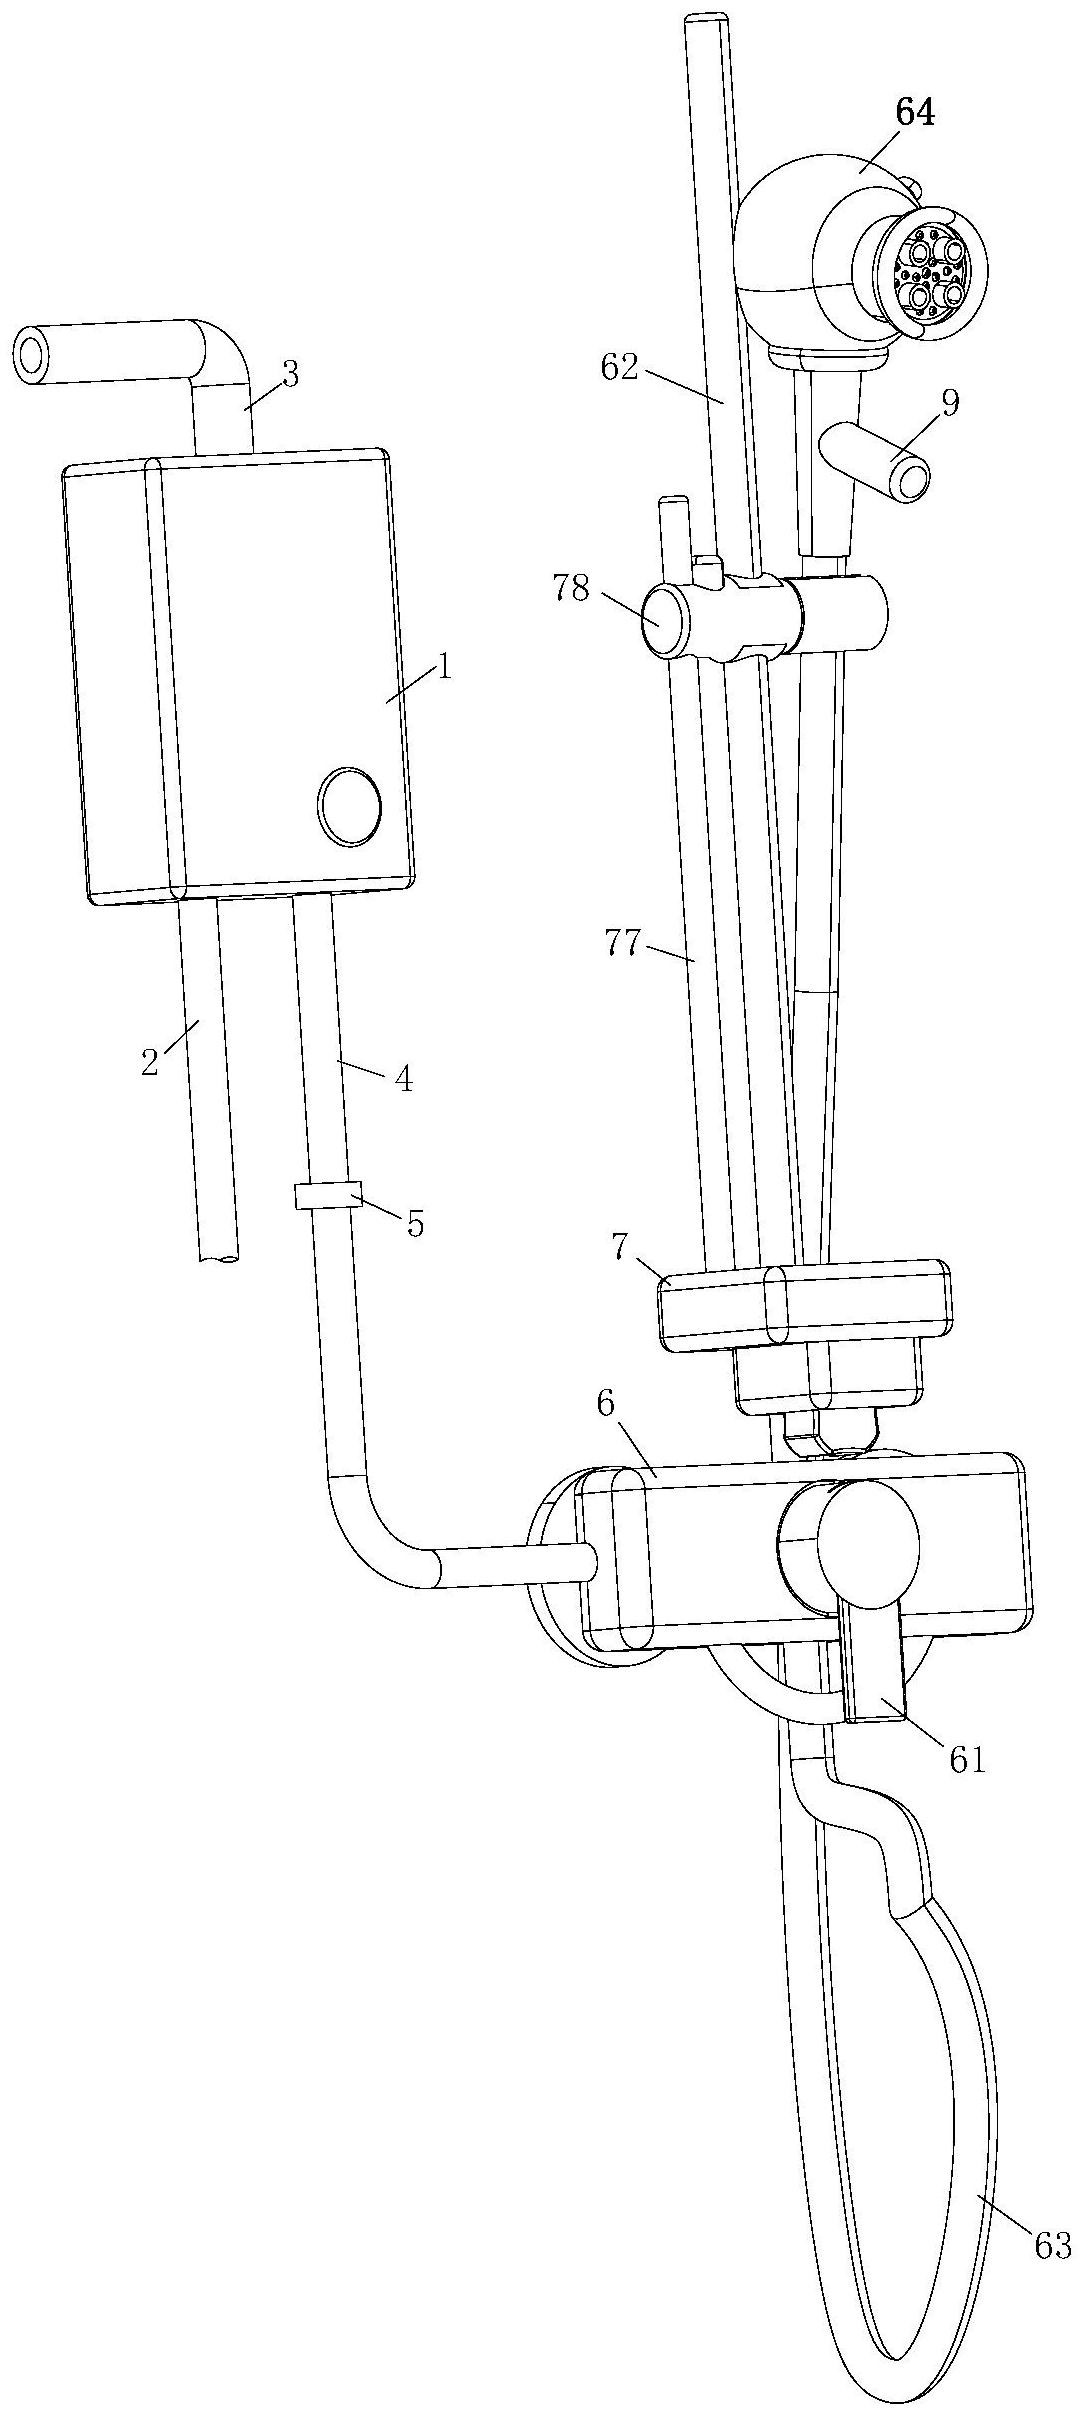 一种燃气热水器专利图